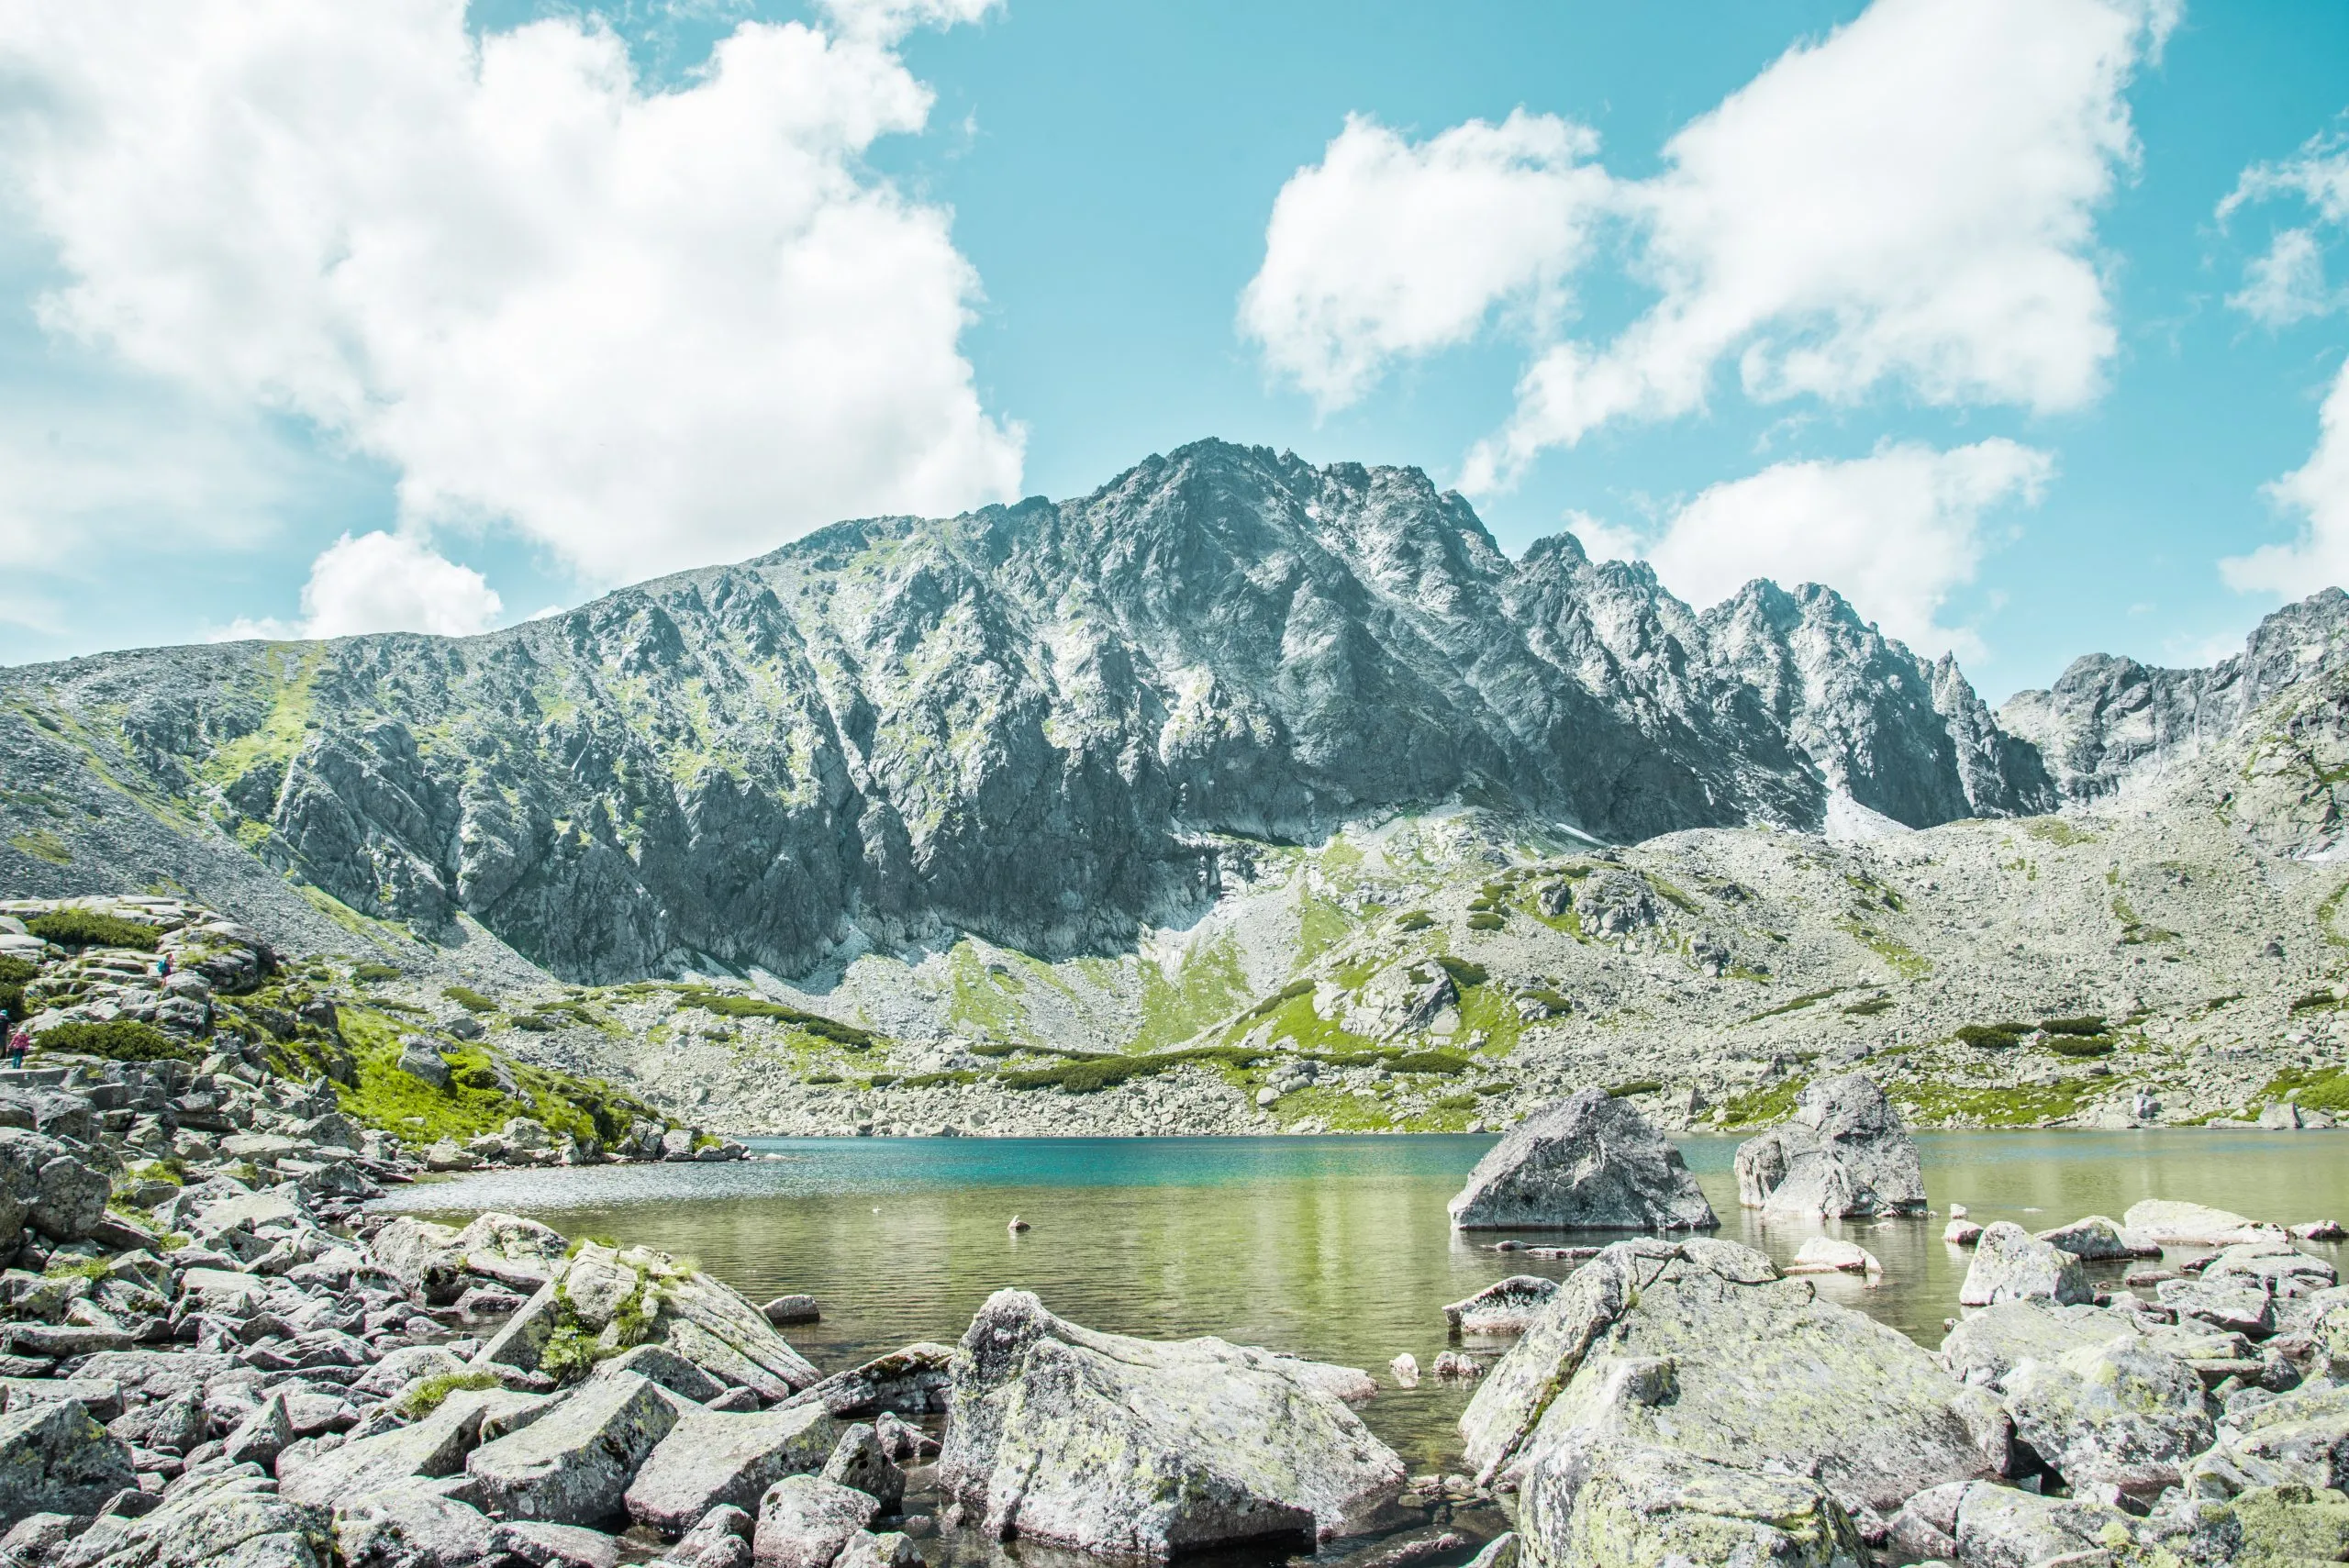 Parco nazionale degli Alti Tatra, Slovacchia, Europa. Sentiero escursionistico verso il lago di montagna Batizovske pleso e Sliezsky dom (casa di Selesia). Paesaggio estivo con cielo azzurro, sole splendente e fiori protetti dei Tatra.